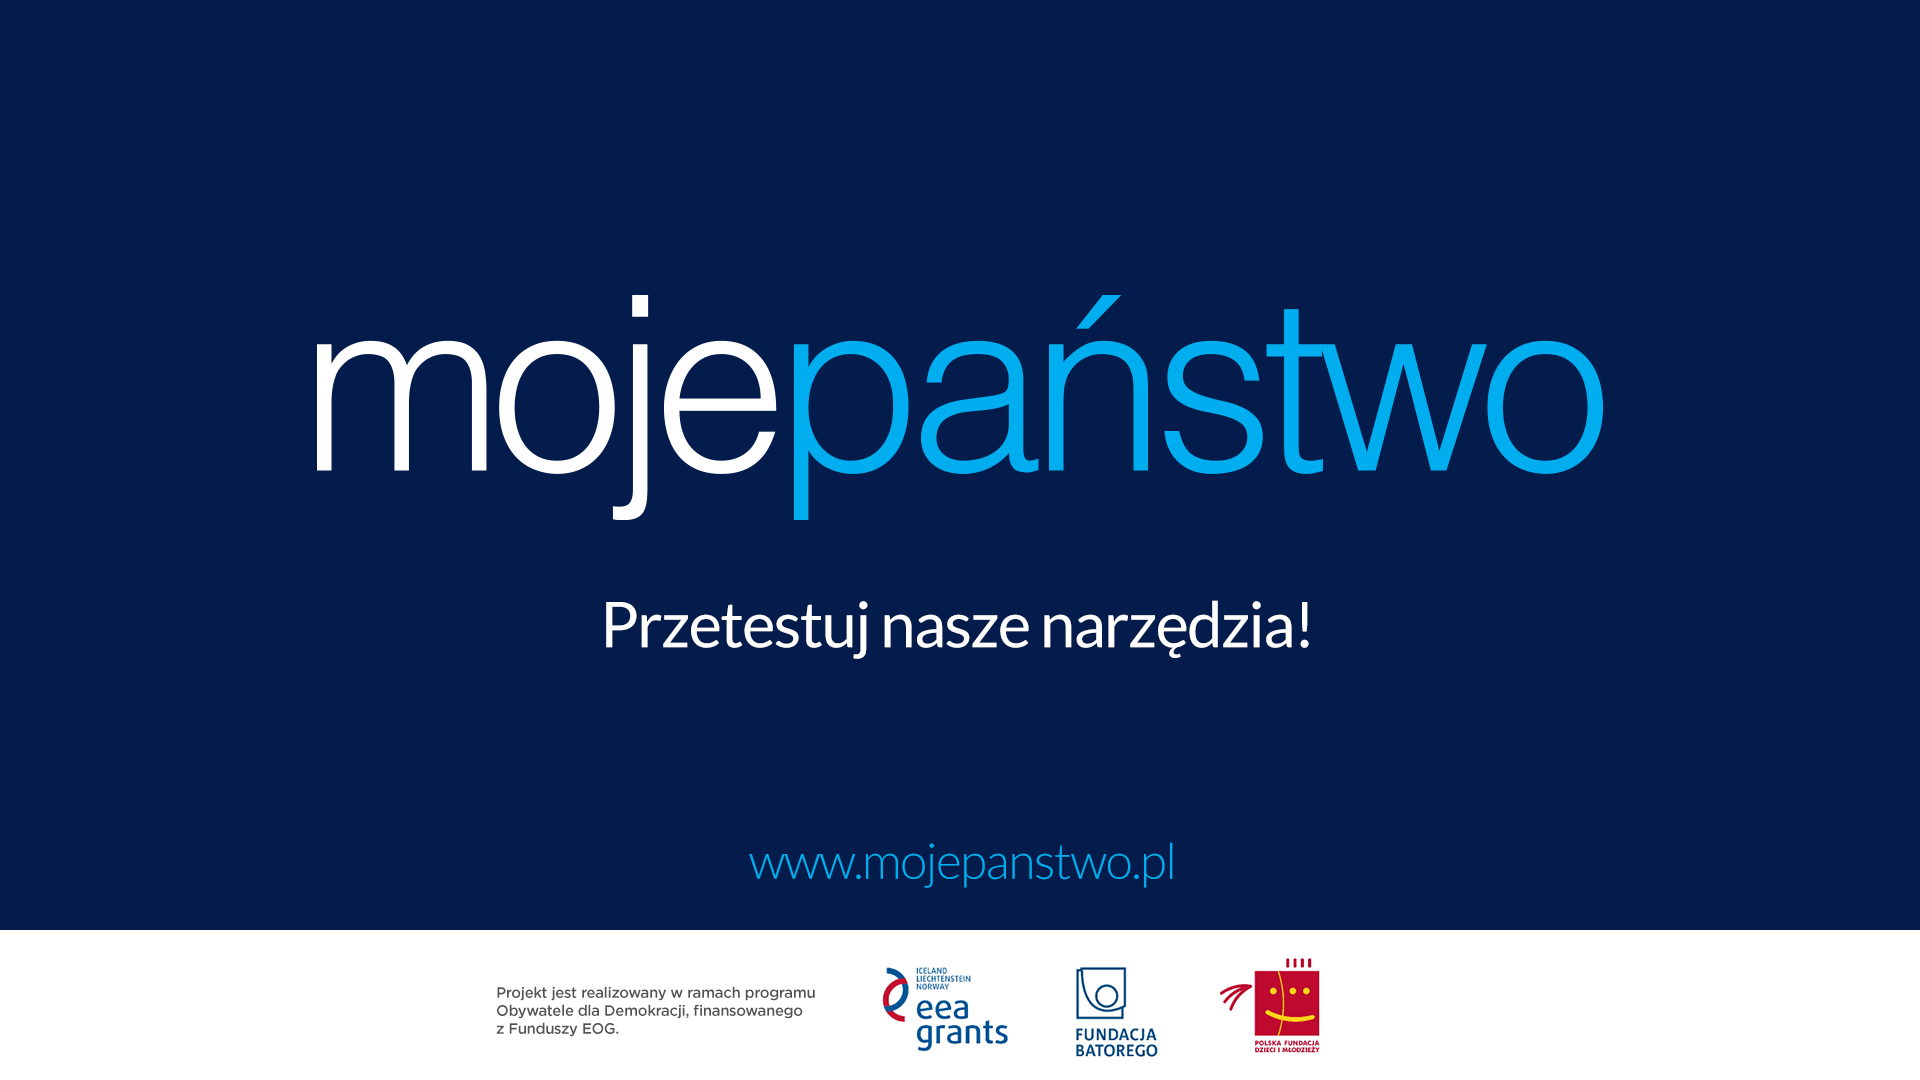 Dlaczego warto założyć konto NGO na mojepanstwo.pl?